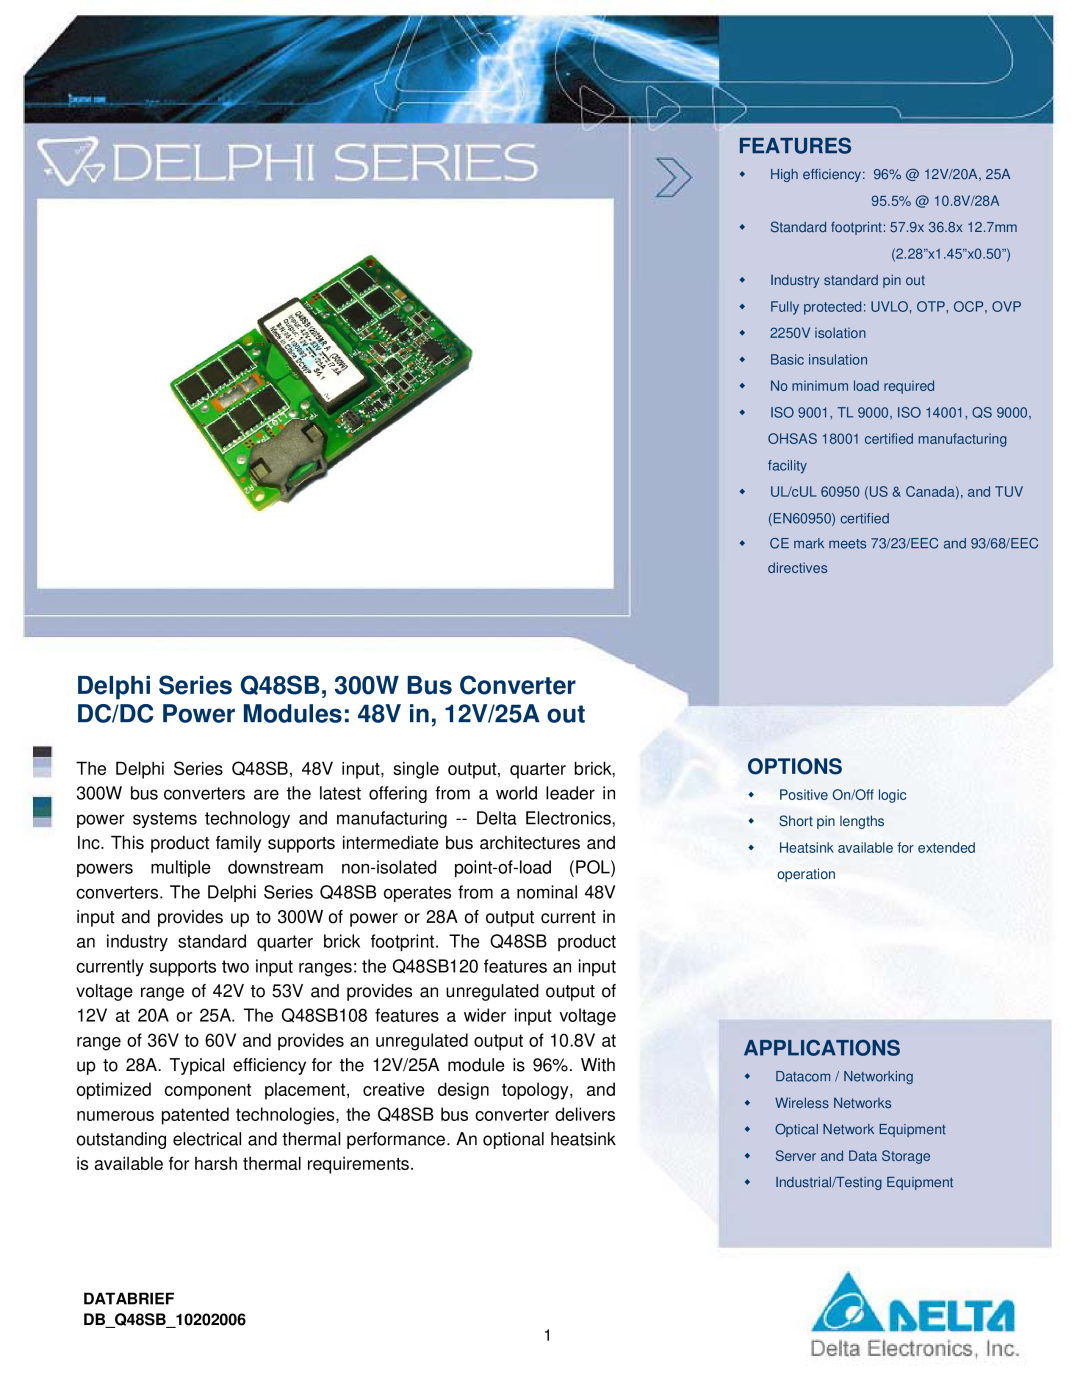 Delta Electronics Series Q48SB manual Features, Options, Applications, DATABRIEF DBQ48SB10202006 